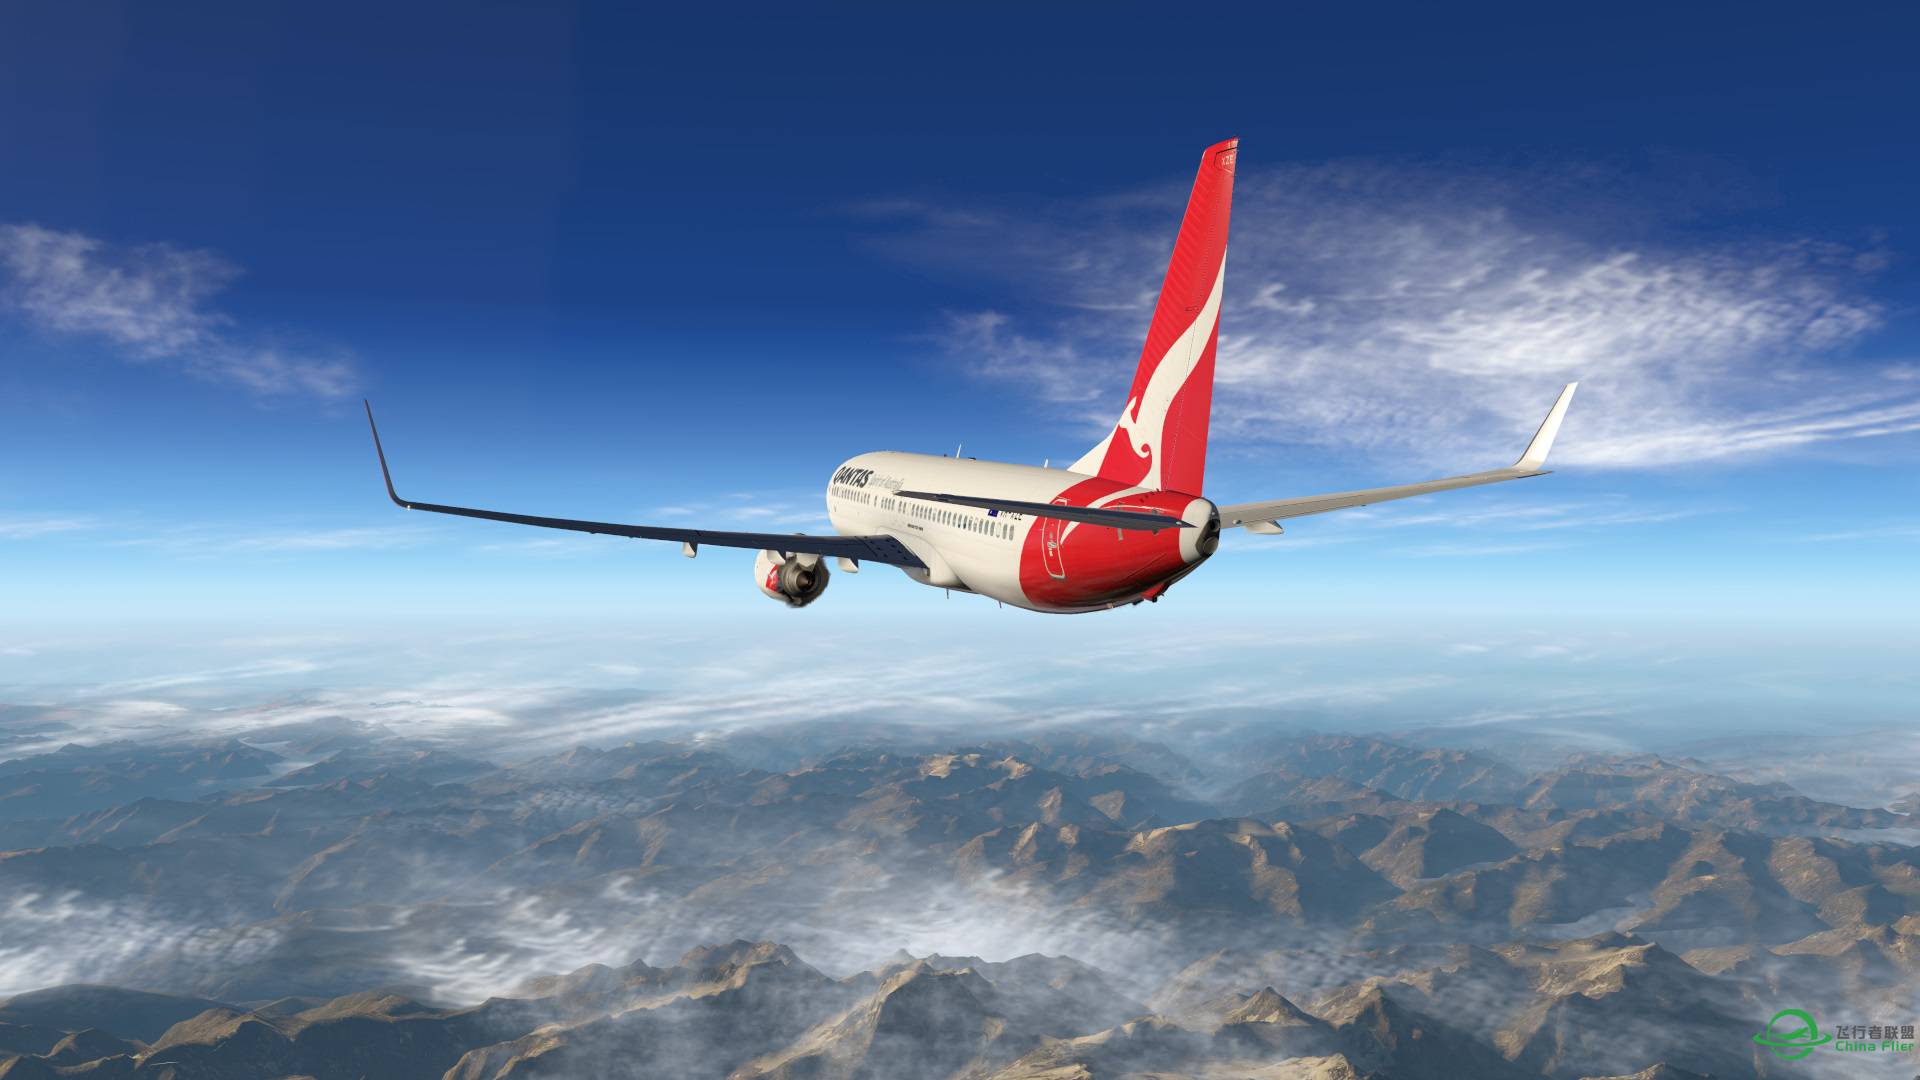 飞跃阿尔卑斯山 X-plane 11-6349 